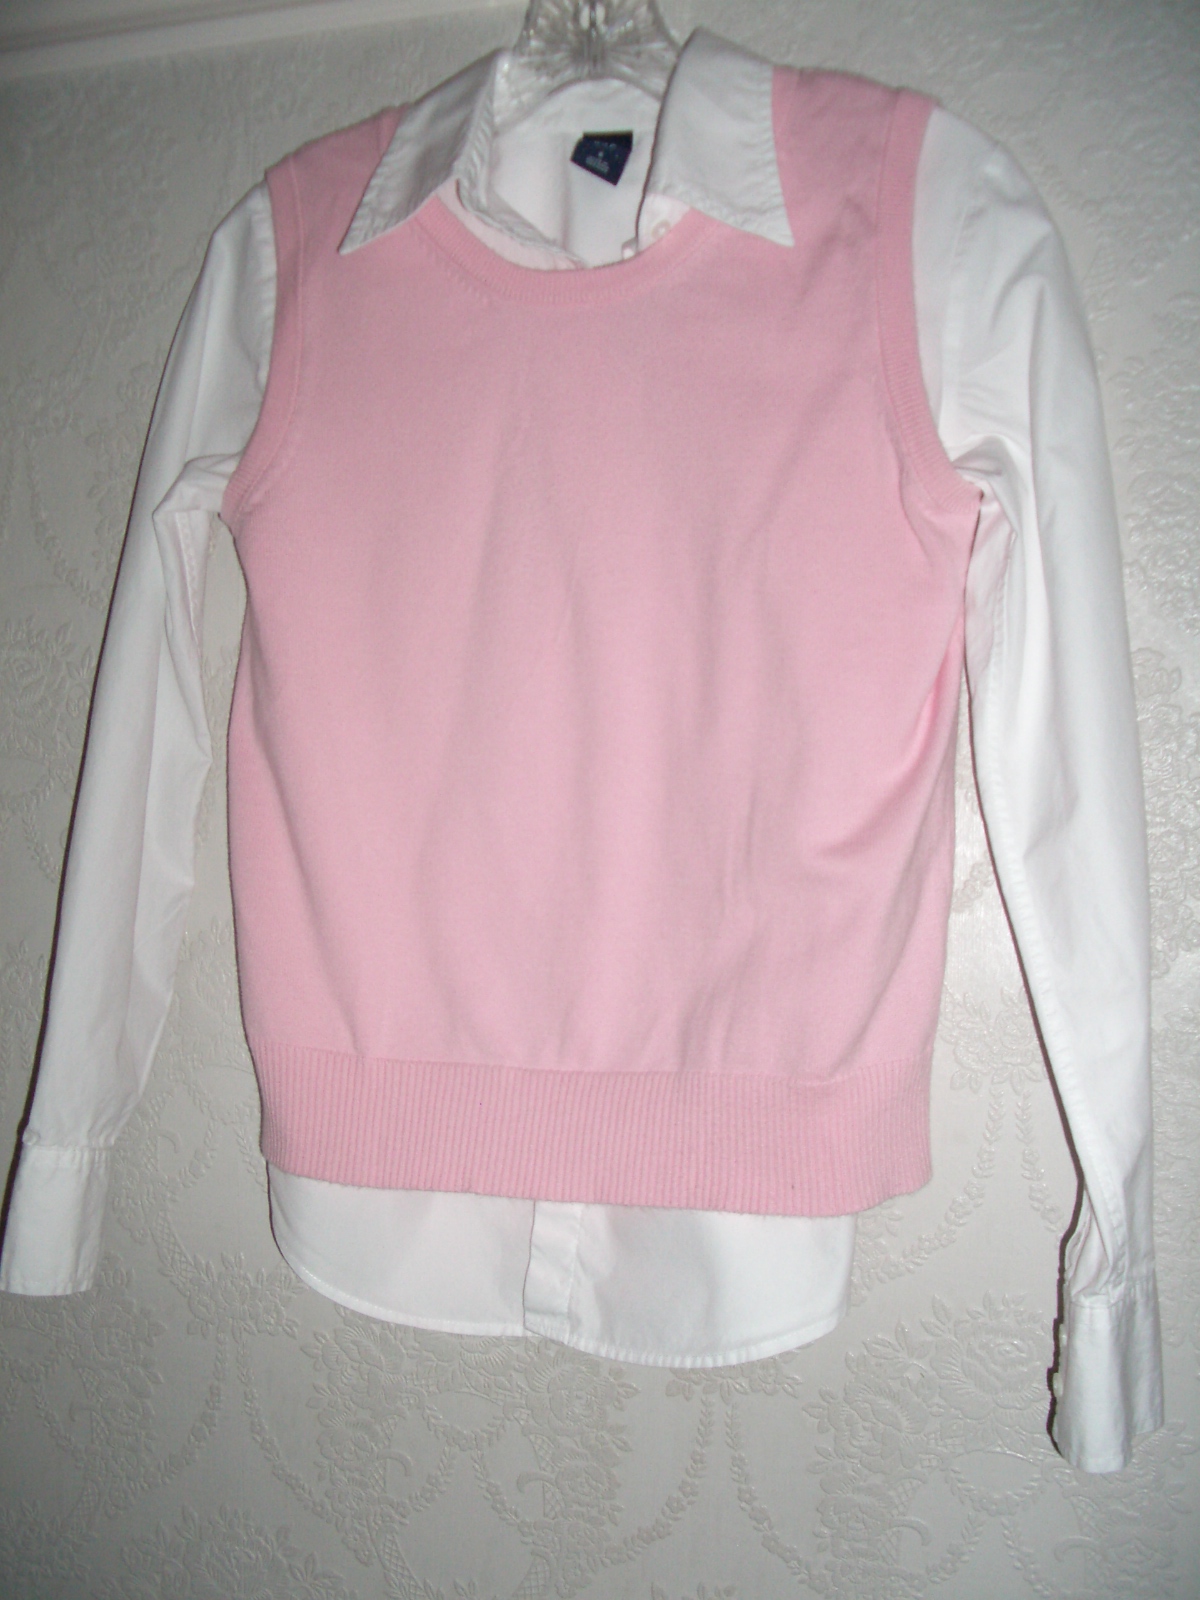 white-shirt-pink-sleeveless-sweater.JPG